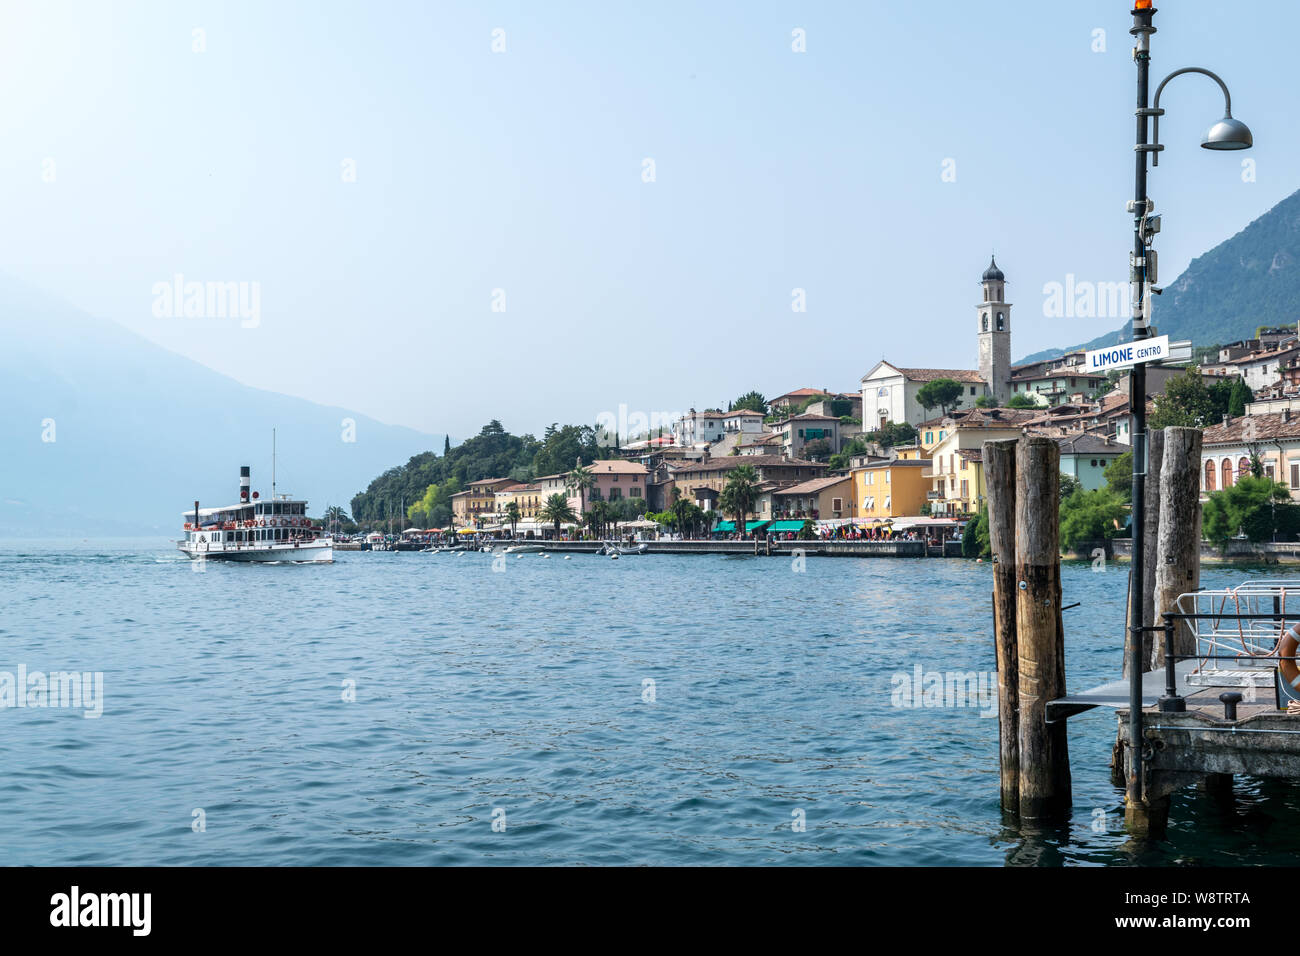 Limone, Italia - Luglio 24, 2019: si tratta di un punto di vista di una vecchia barca a remi che entrano nel paese di Limone sul Garda in Italia Foto Stock